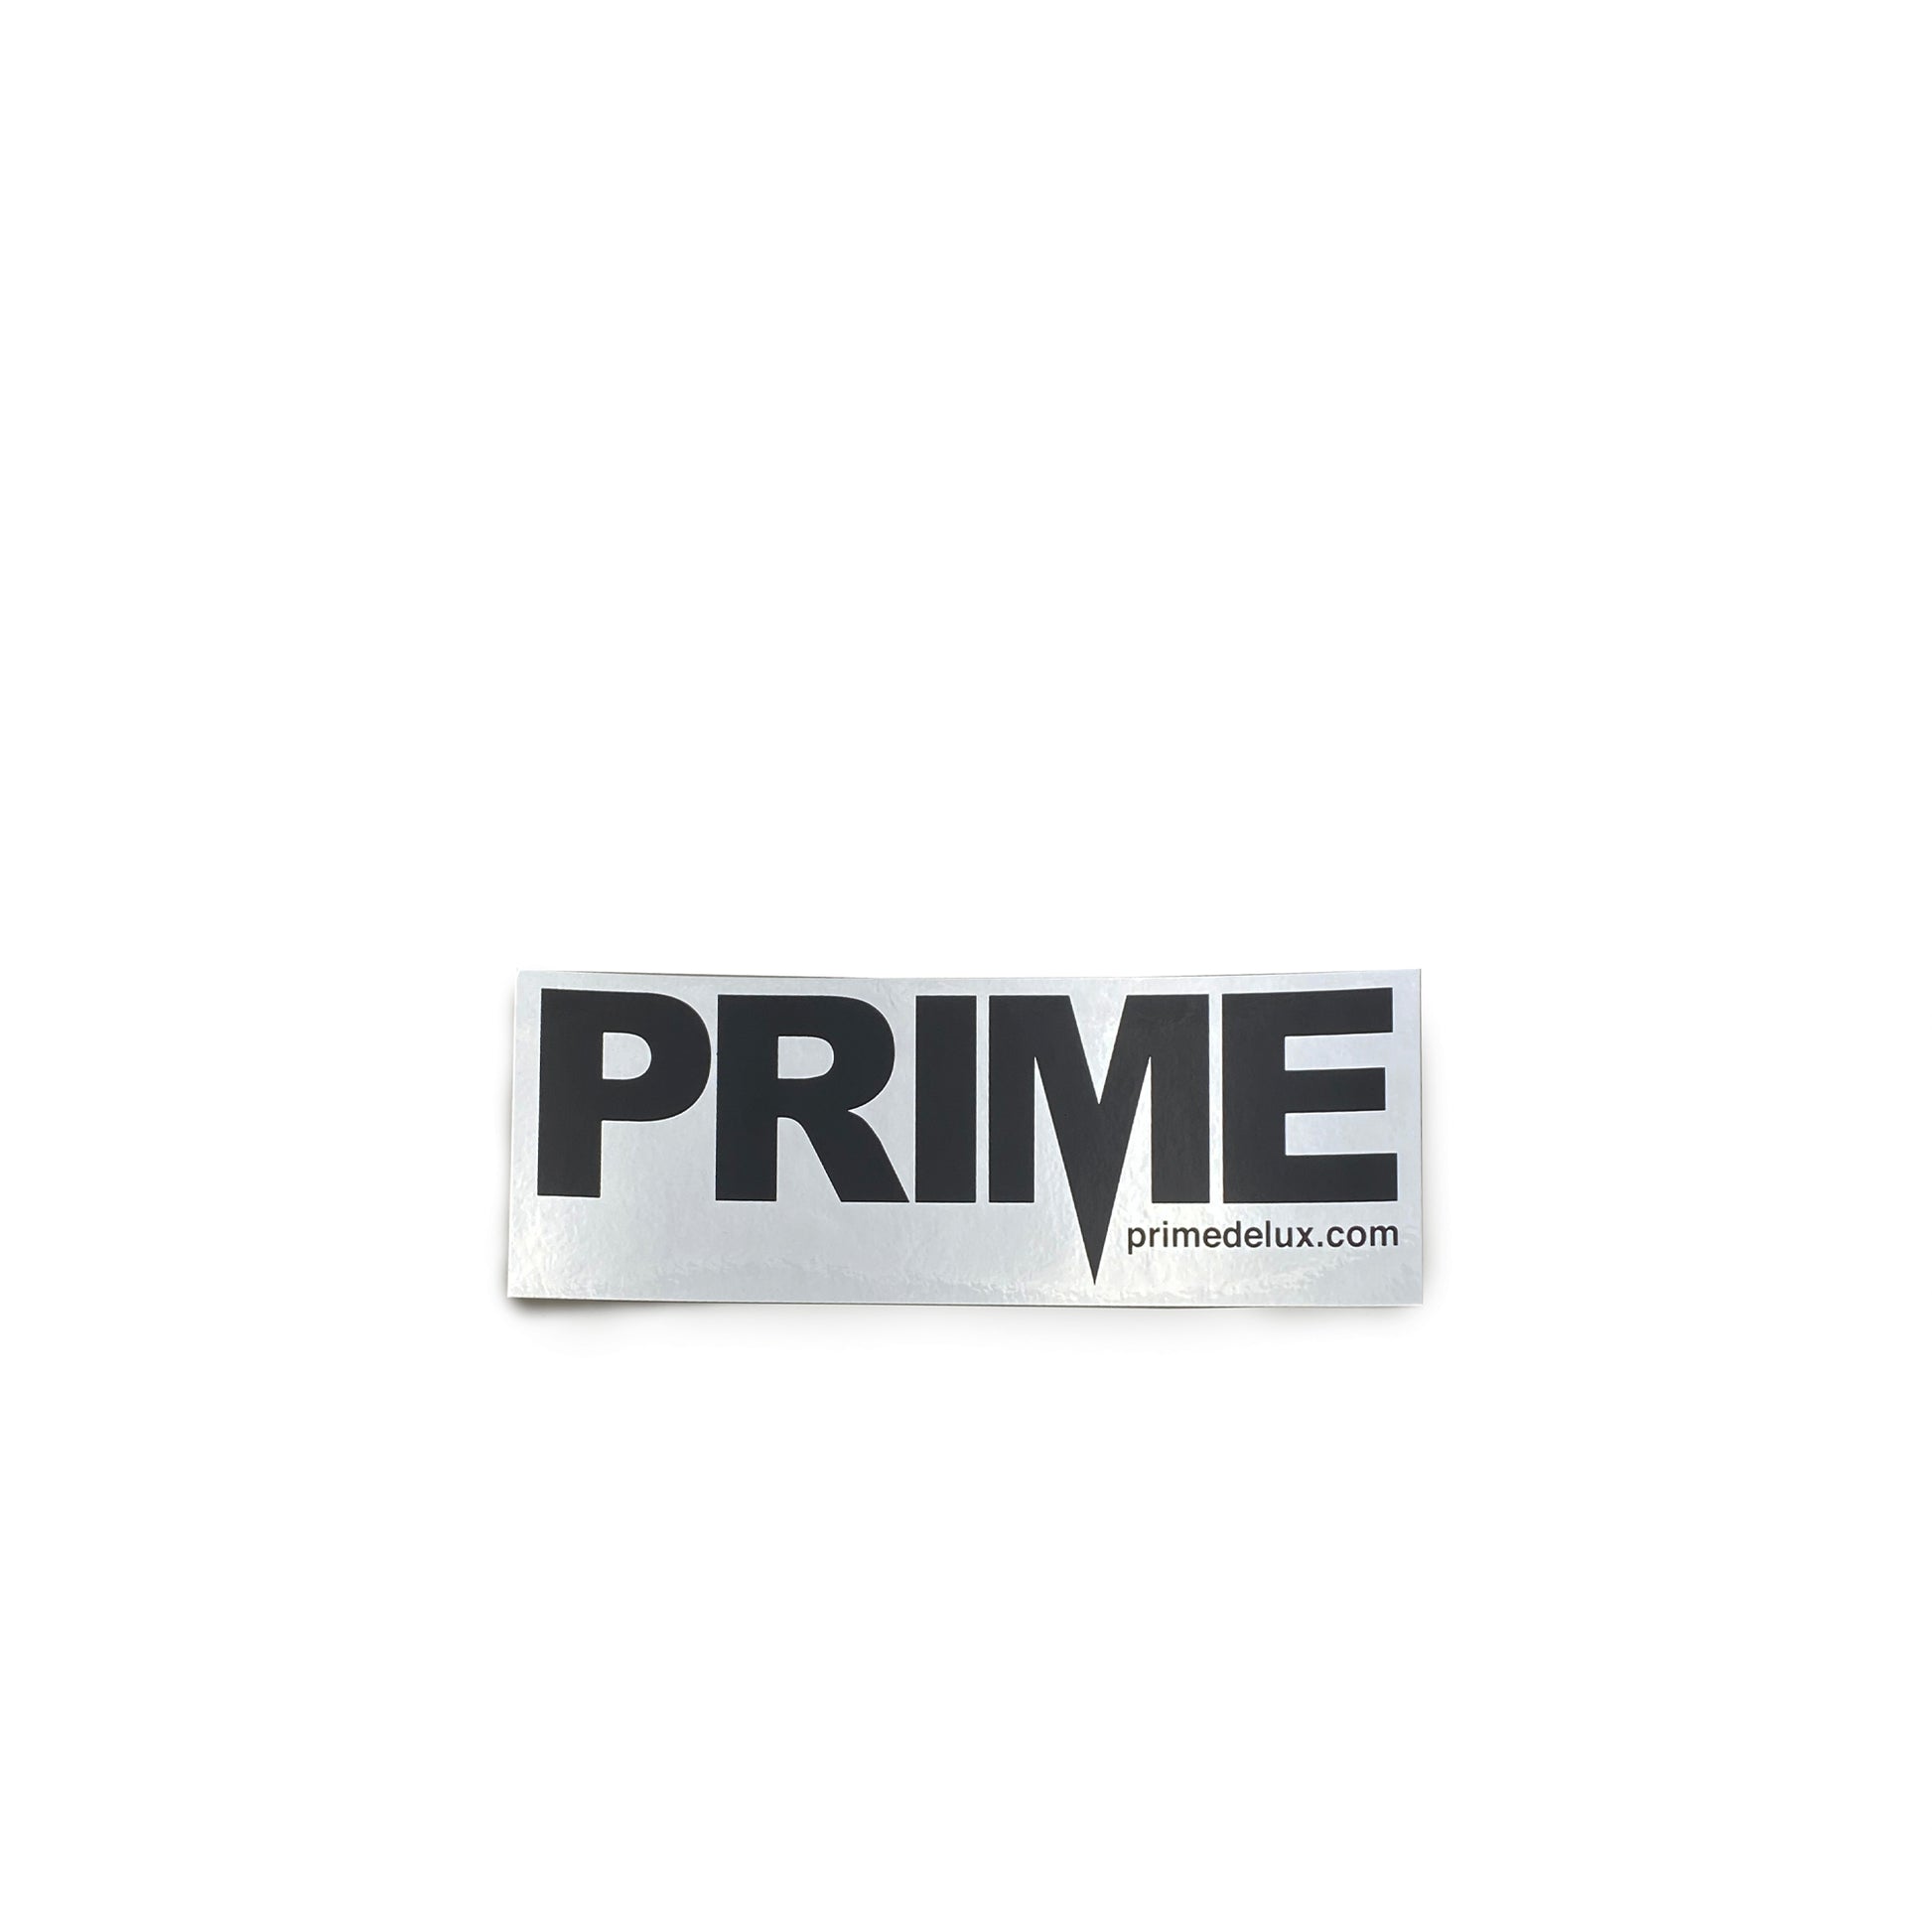 Prime Delux OG Sticker M - Black / Foil Silver - Prime Delux Store